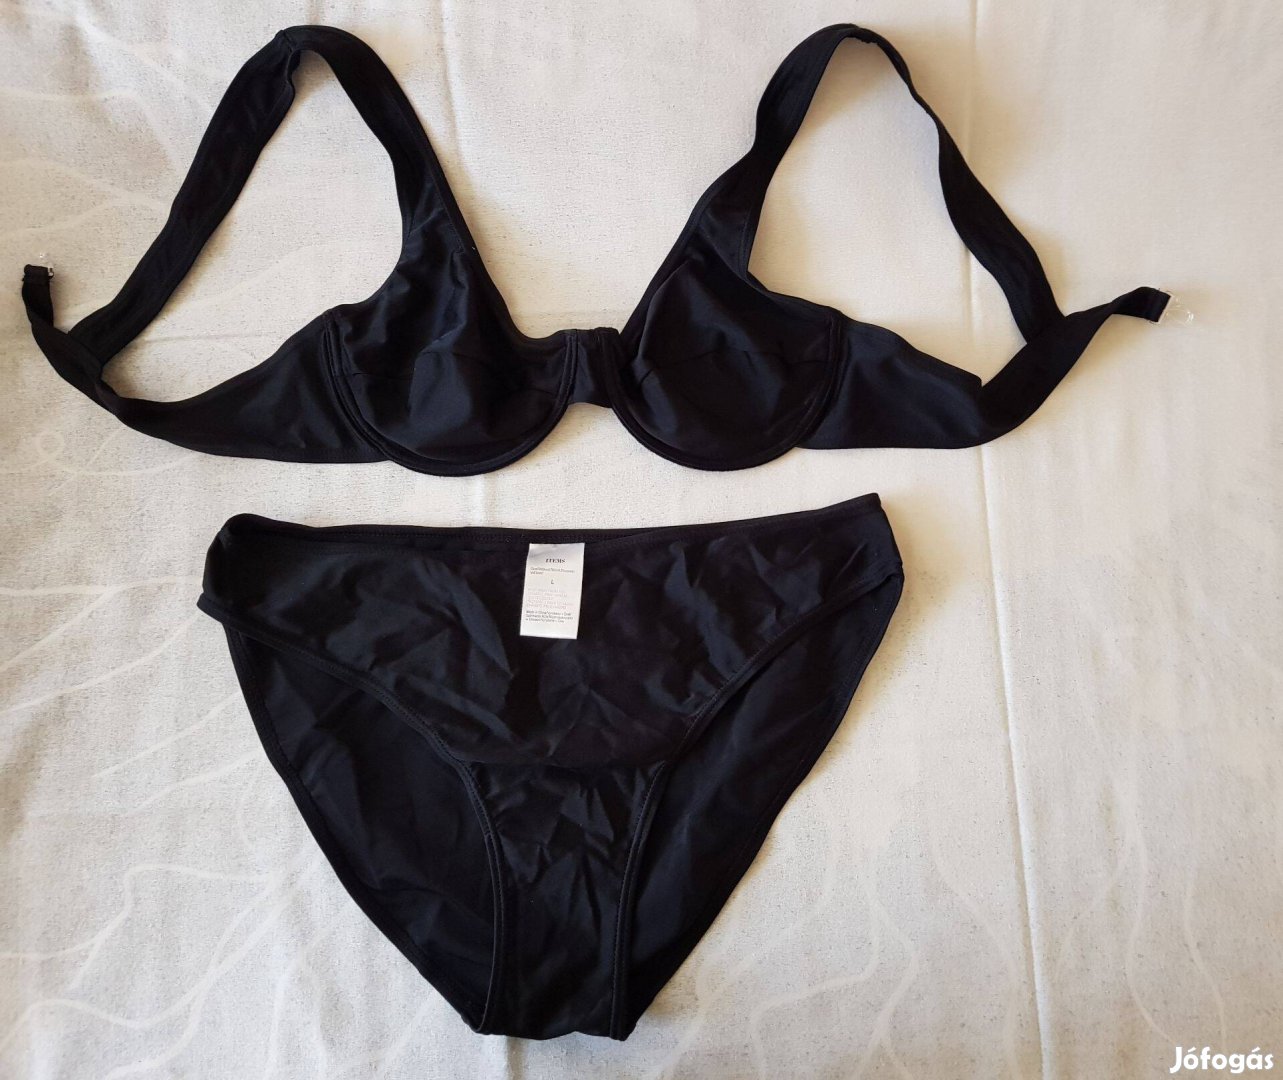 Items női kétrészes fürdőruha, bikini fekete, L-es méretben eladó